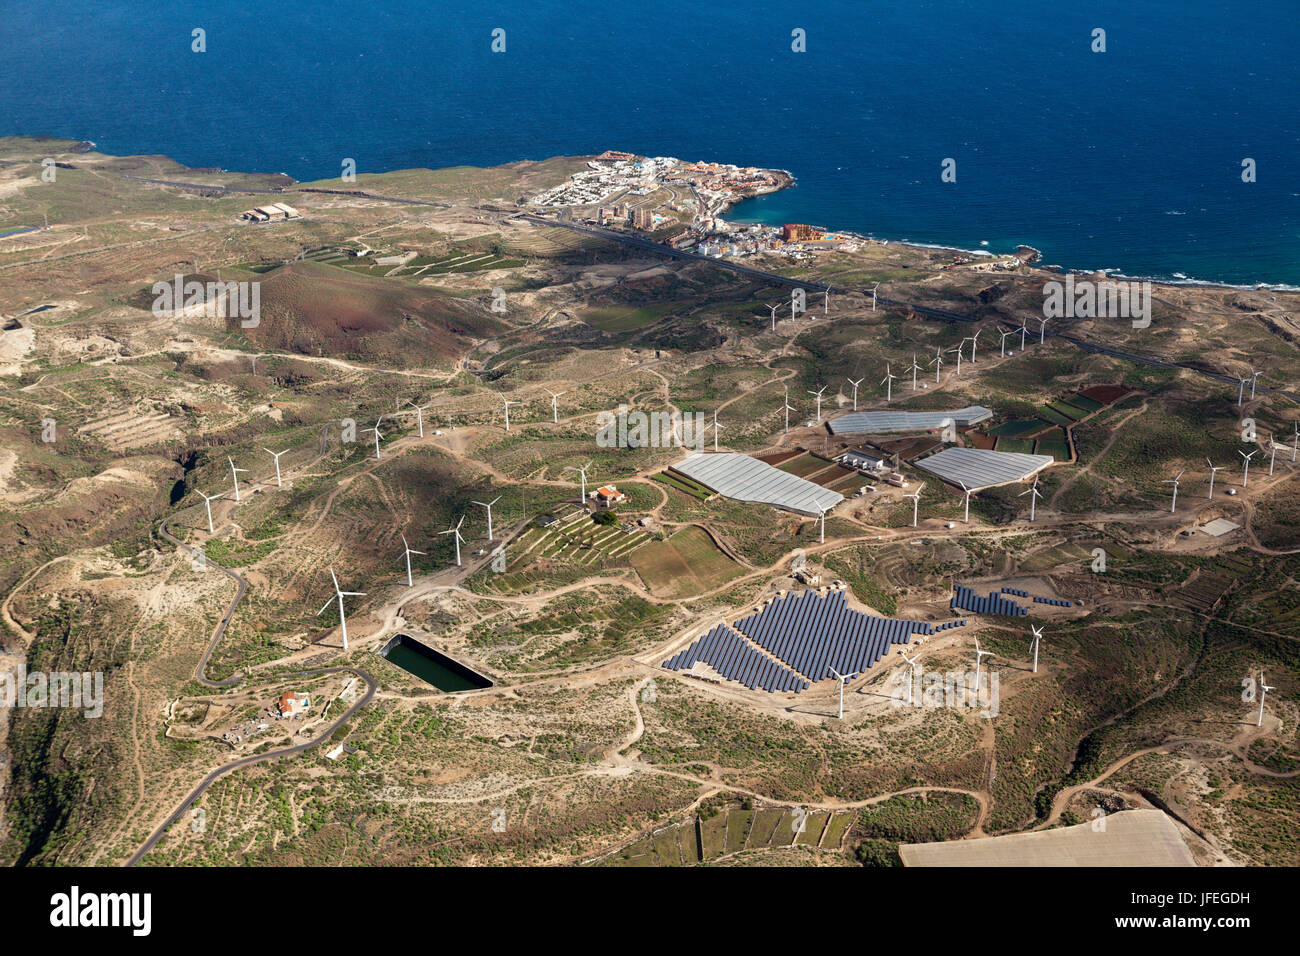 Vue aérienne, les installations solaires et éoliennes, Tenerife, Espagne Banque D'Images